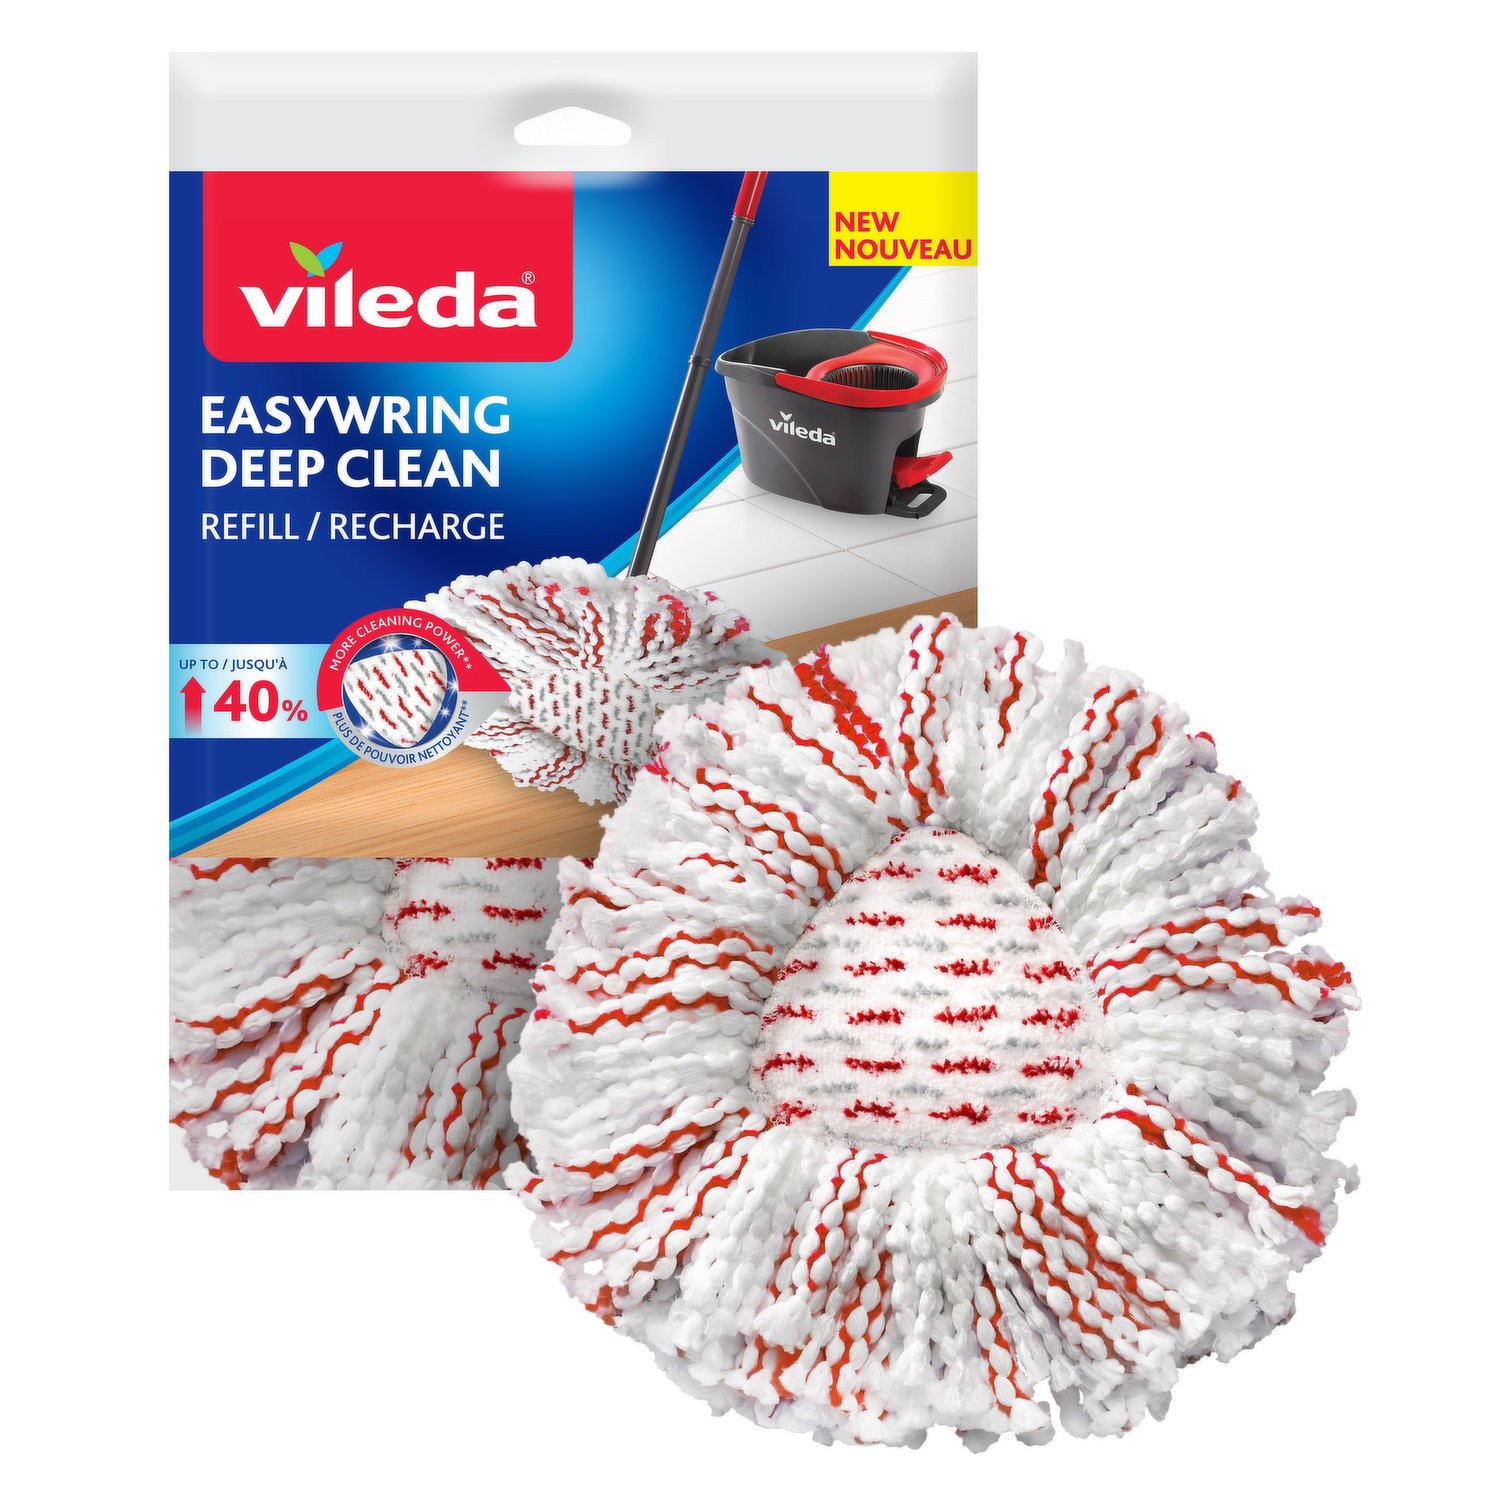 Vileda - Easywring Deep Clean